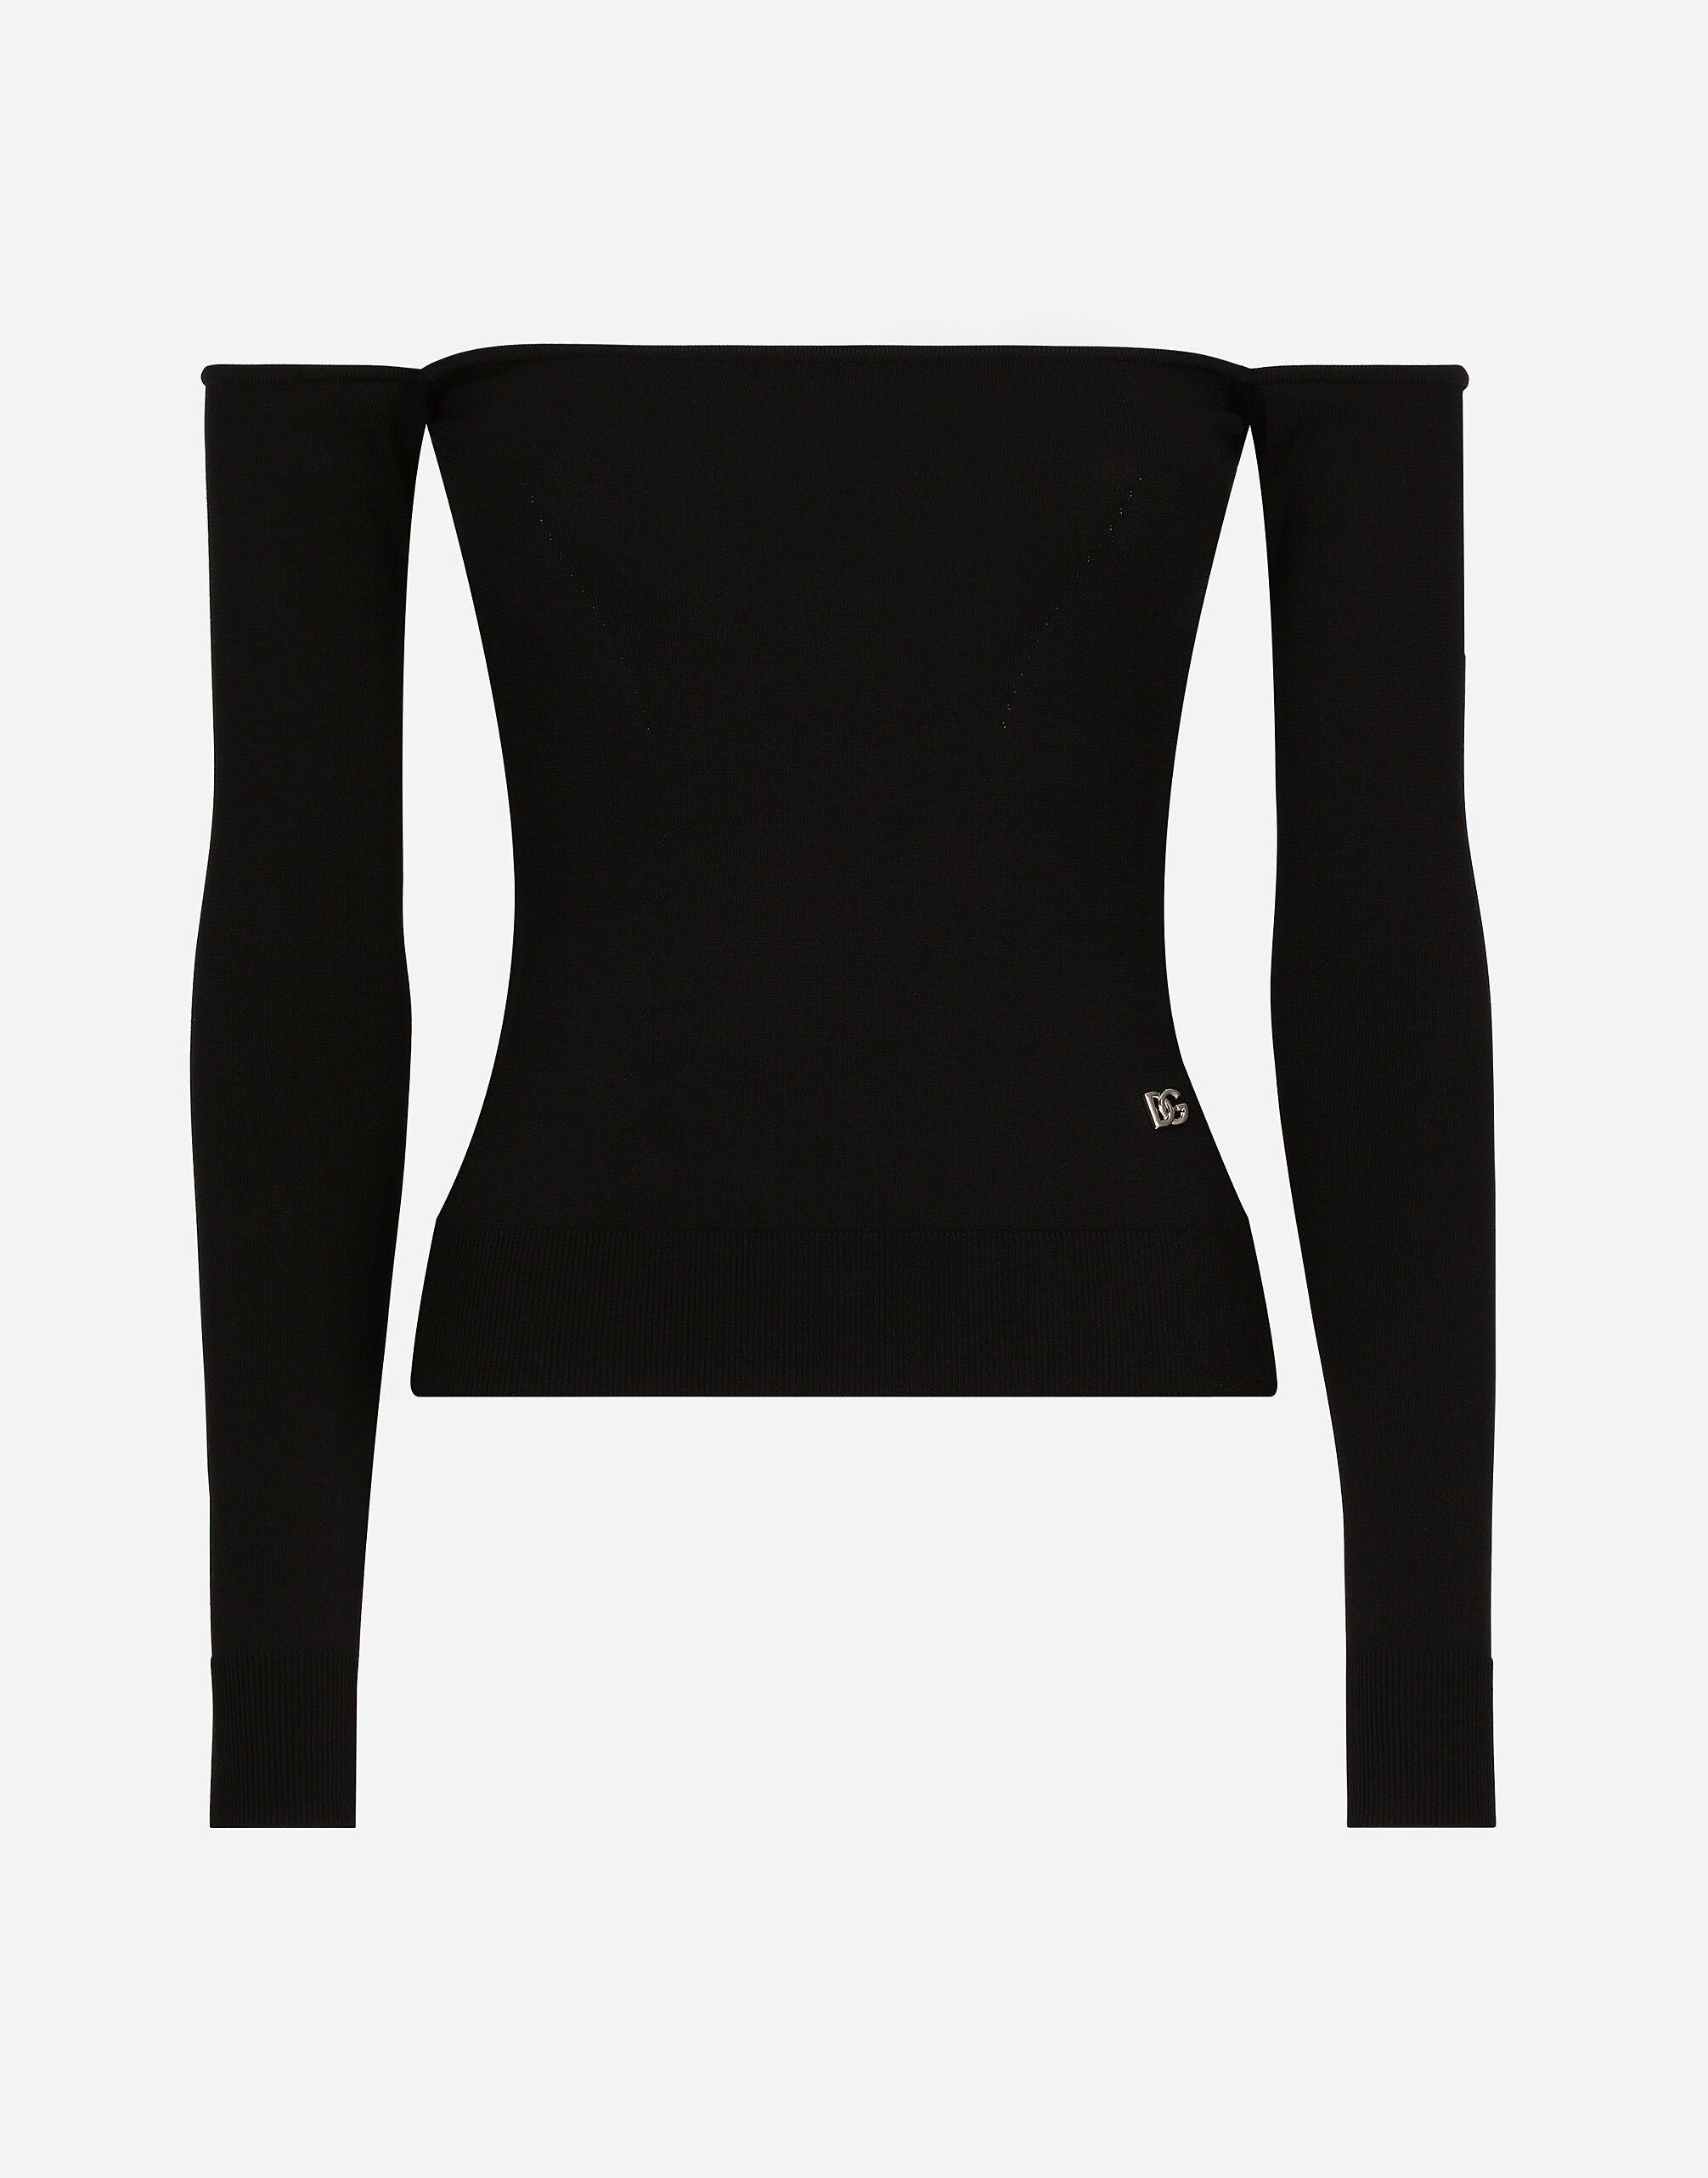 Dolce&Gabbana セーター ストラップレス ビスコース アームウォーマー ブラック CR1622AR572